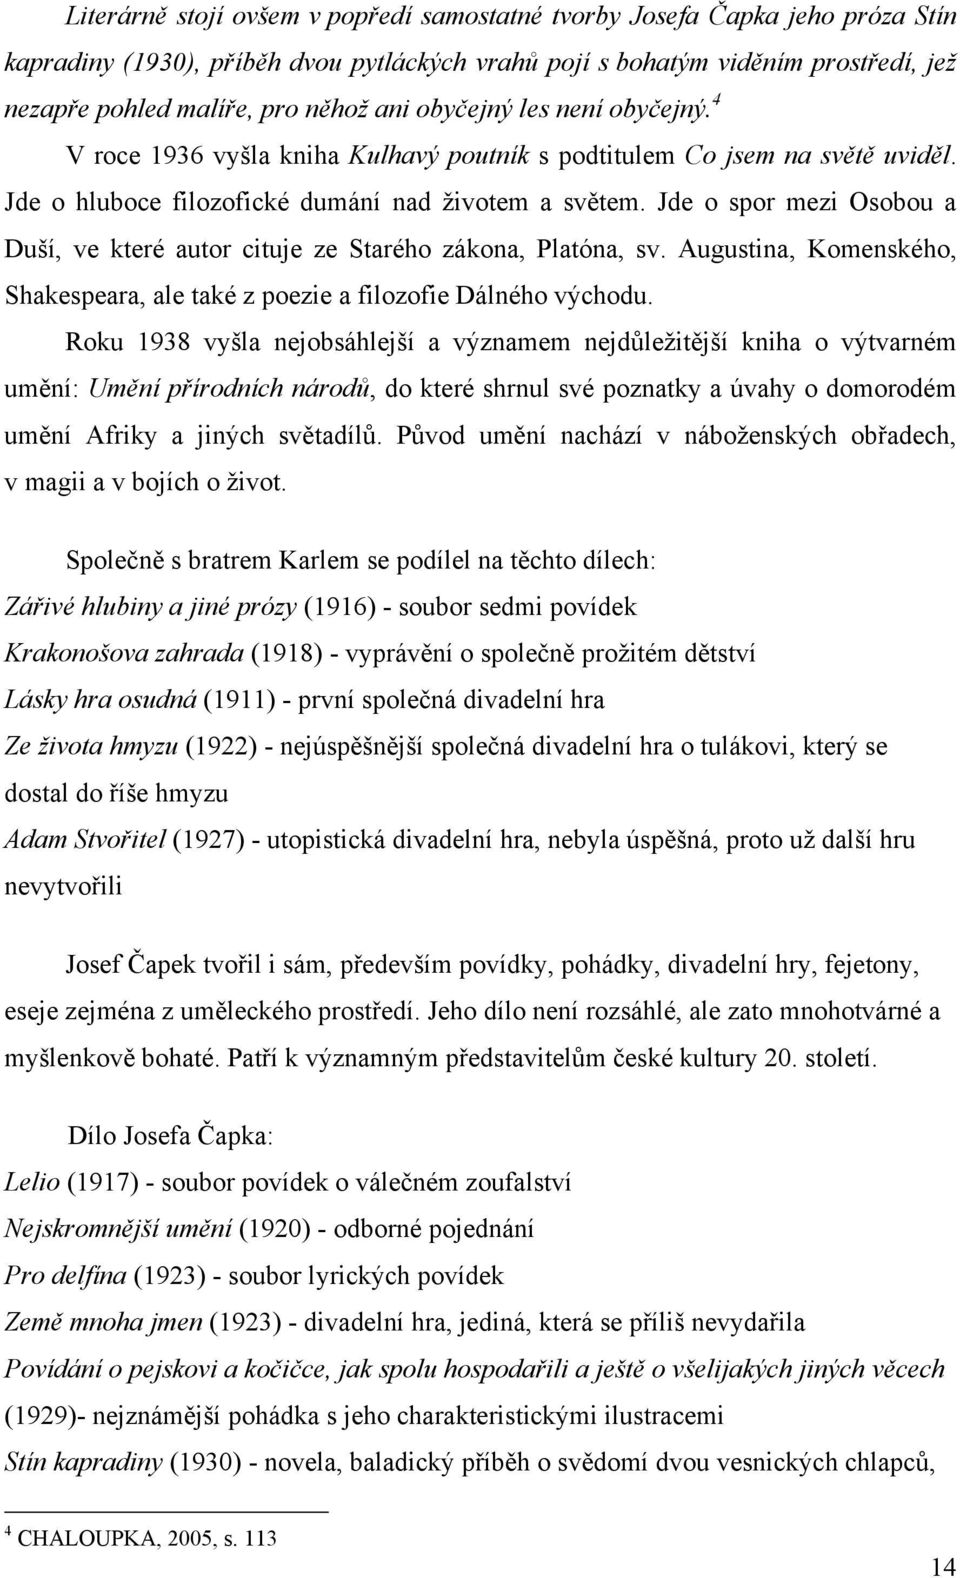 POVÍDÁNÍ O PEJSKOVI A KOČIČCE - PDF Free Download